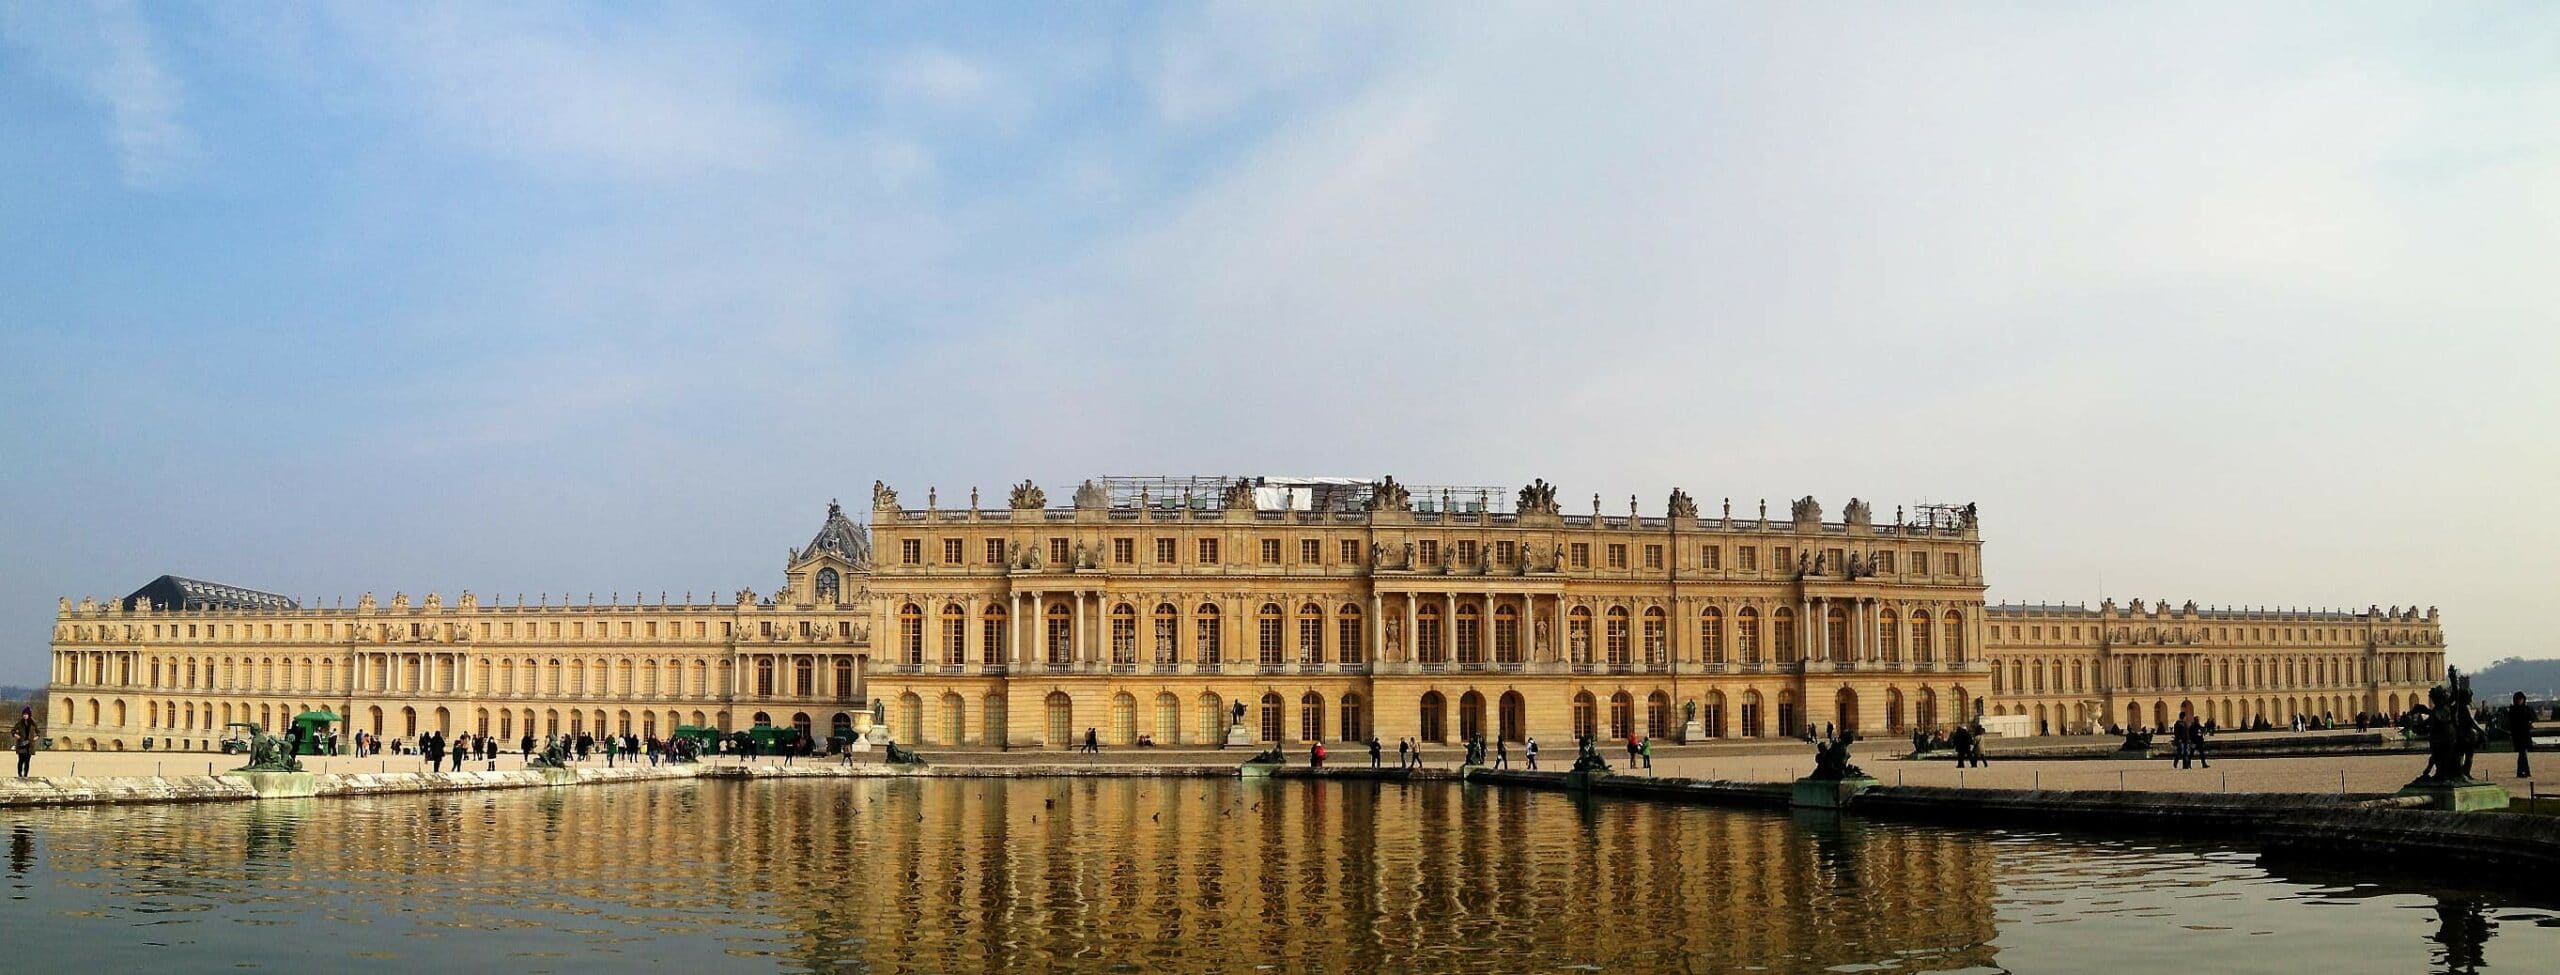 Versailles slottet i Frankrig